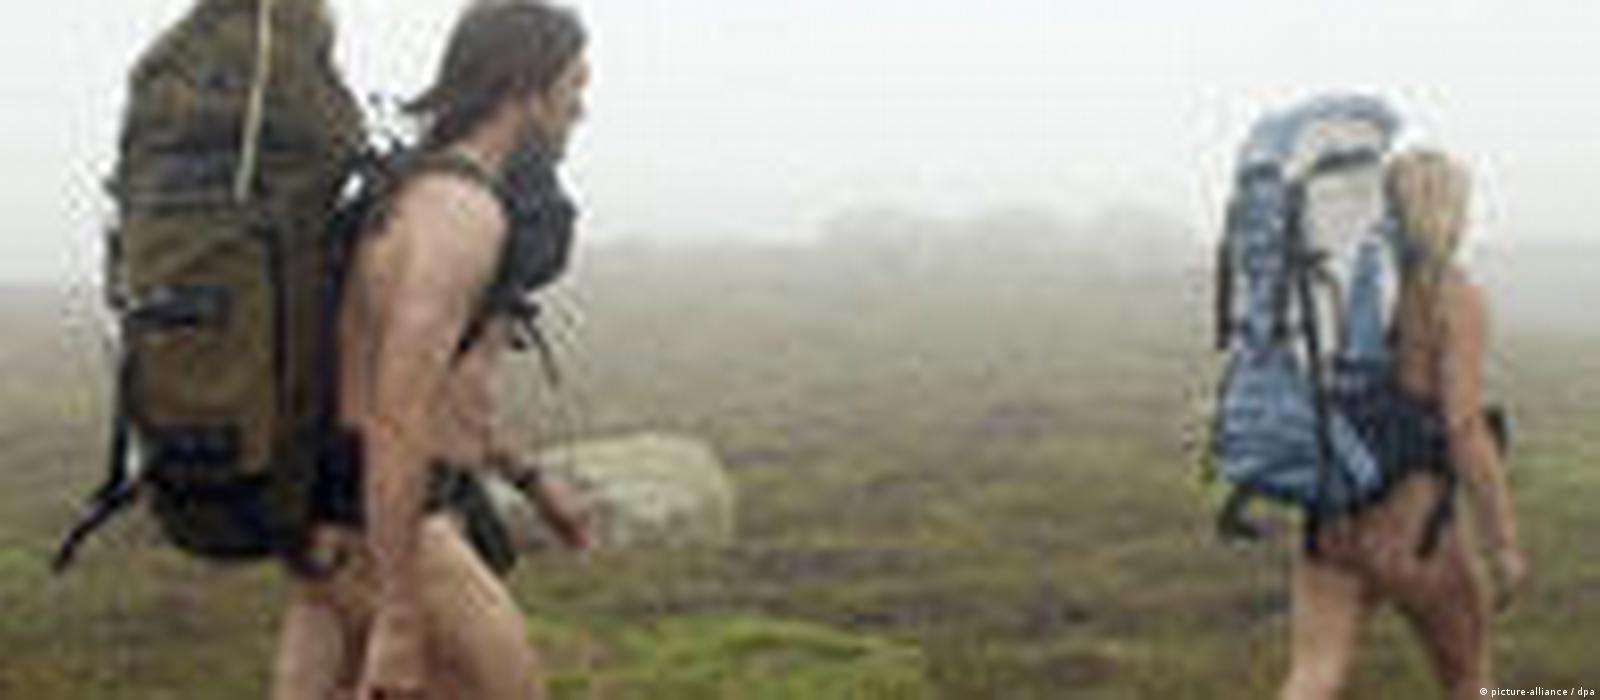 1600px x 700px - Nude hiking ban â€“ DW â€“ 04/26/2009